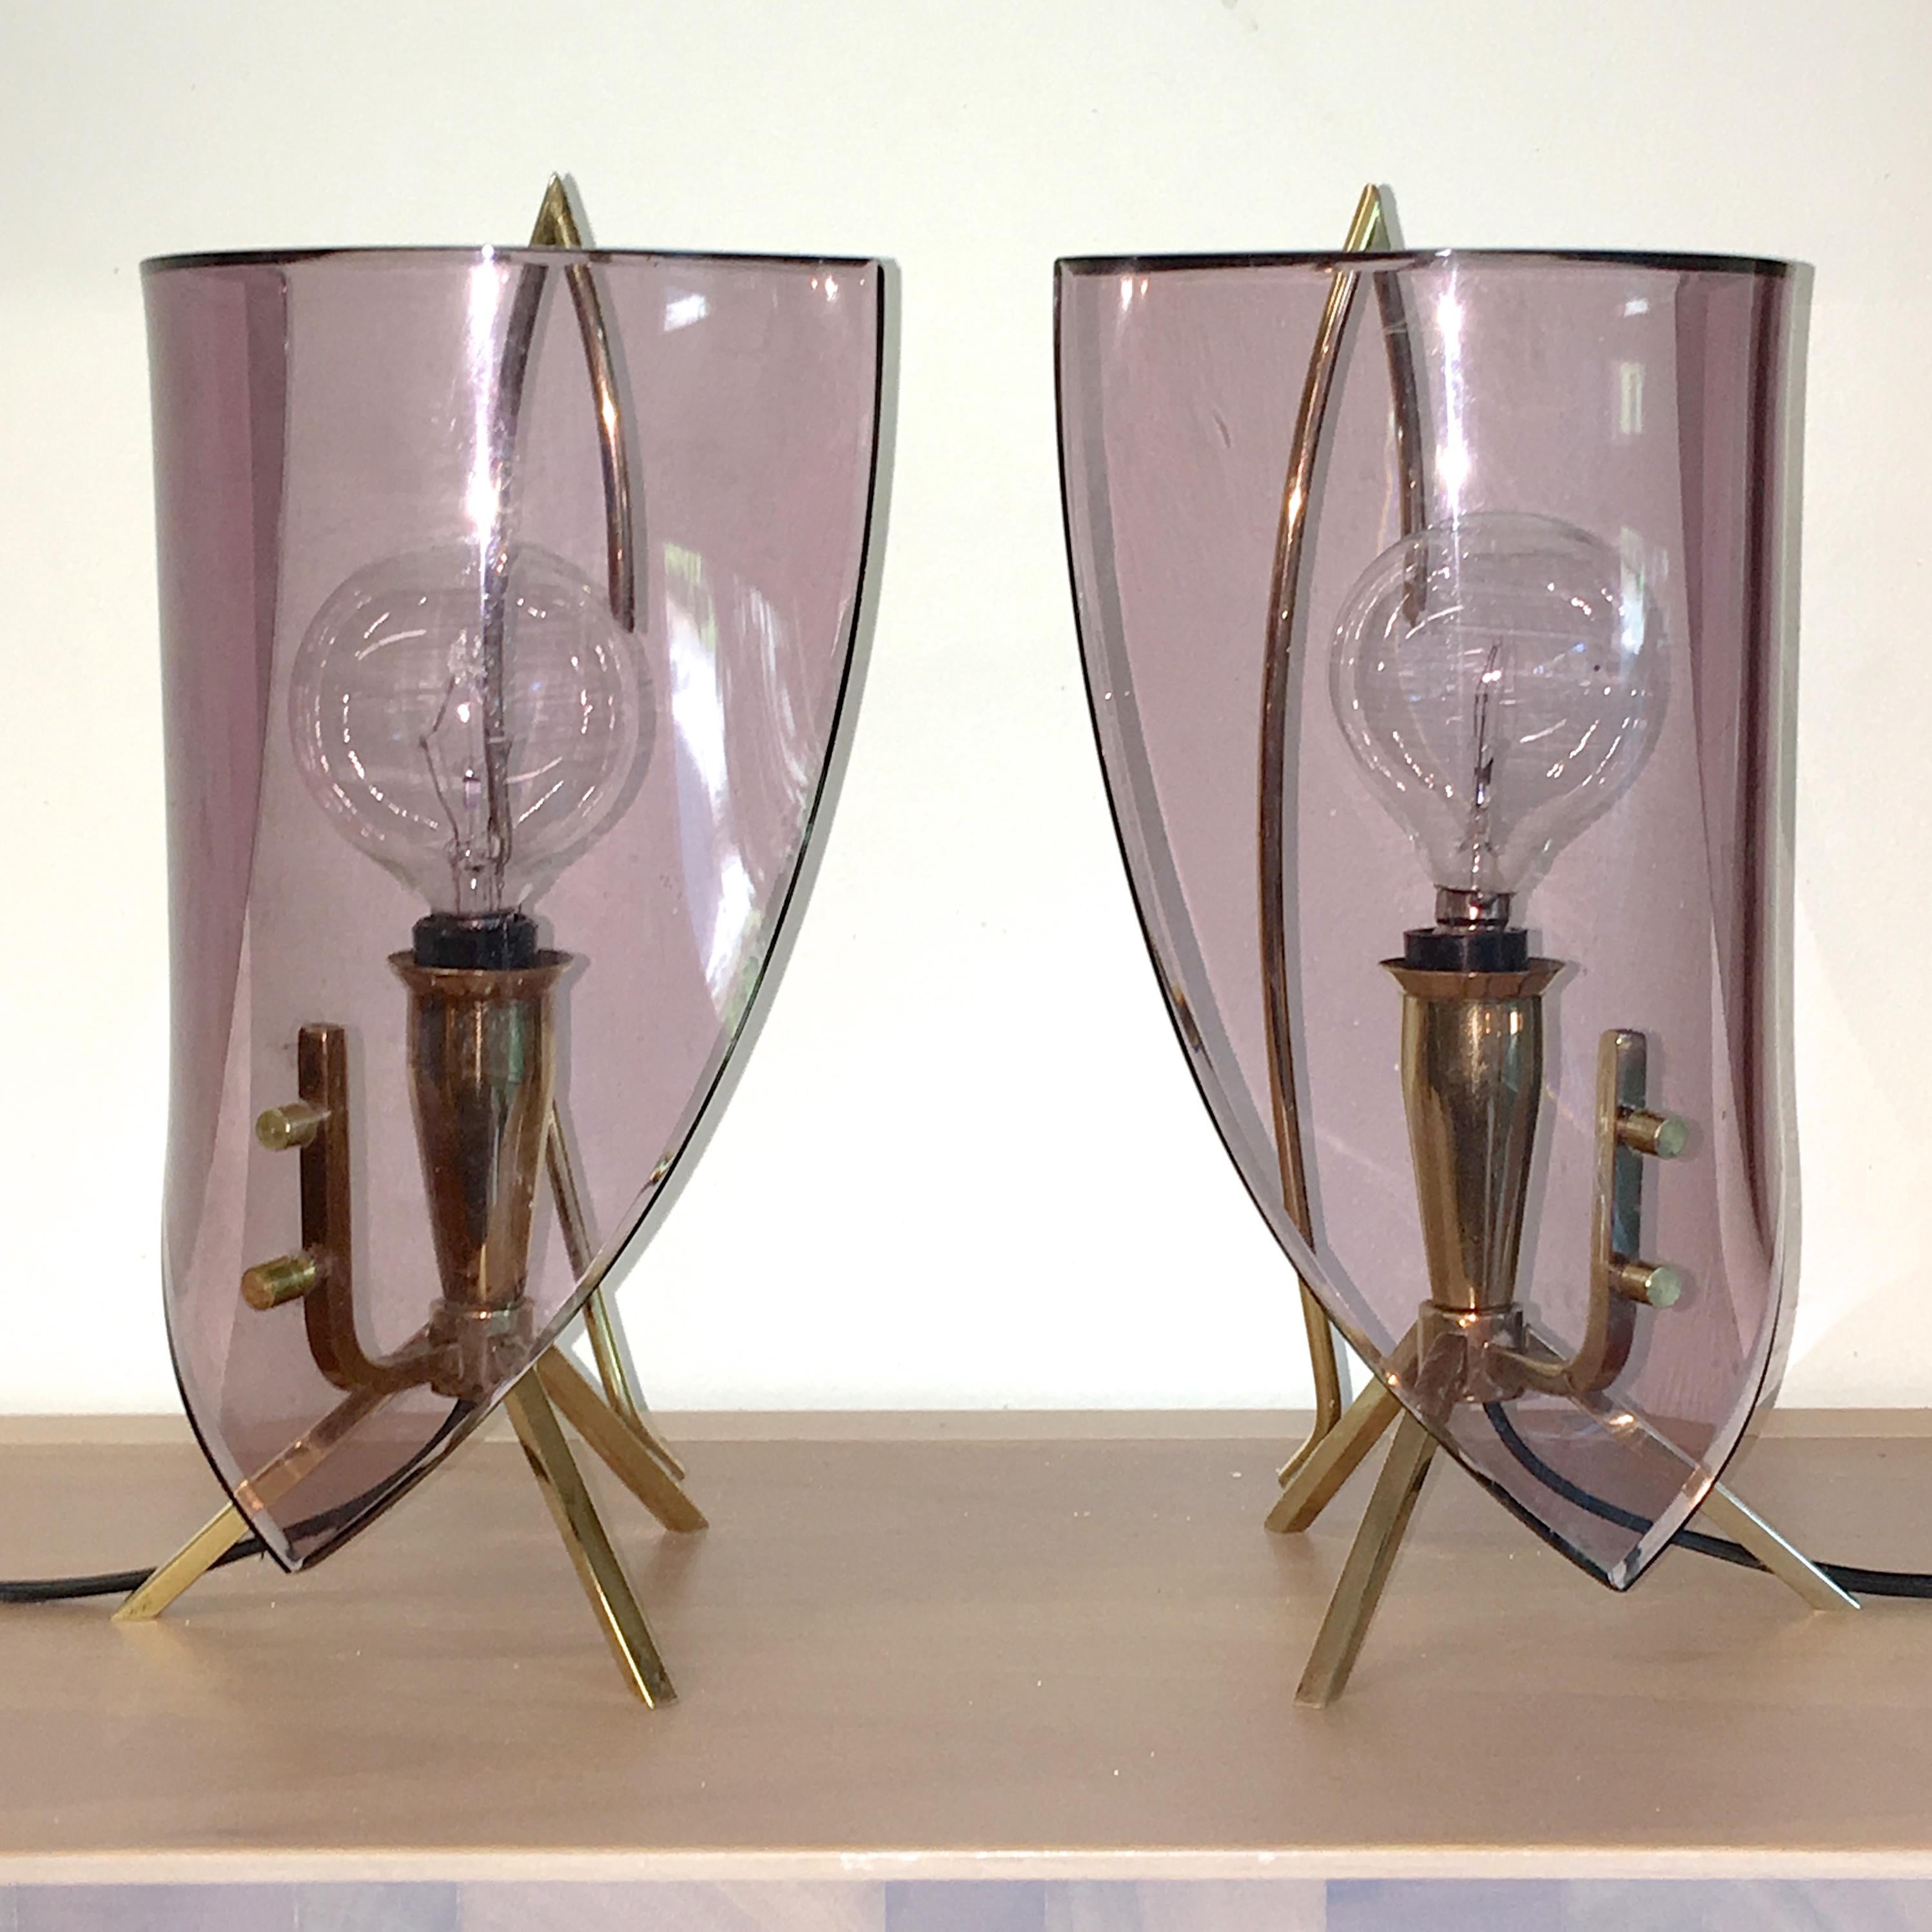 Zwei italienische Nachttischlampen aus den 1950er Jahren, hergestellt von Stilux Milano, die dem Designer Oscar Torlasco zugeschrieben werden. 

Modernistische Struktur aus massivem Messing, einem Kerzenständer nicht unähnlich, mit dreibeinigen